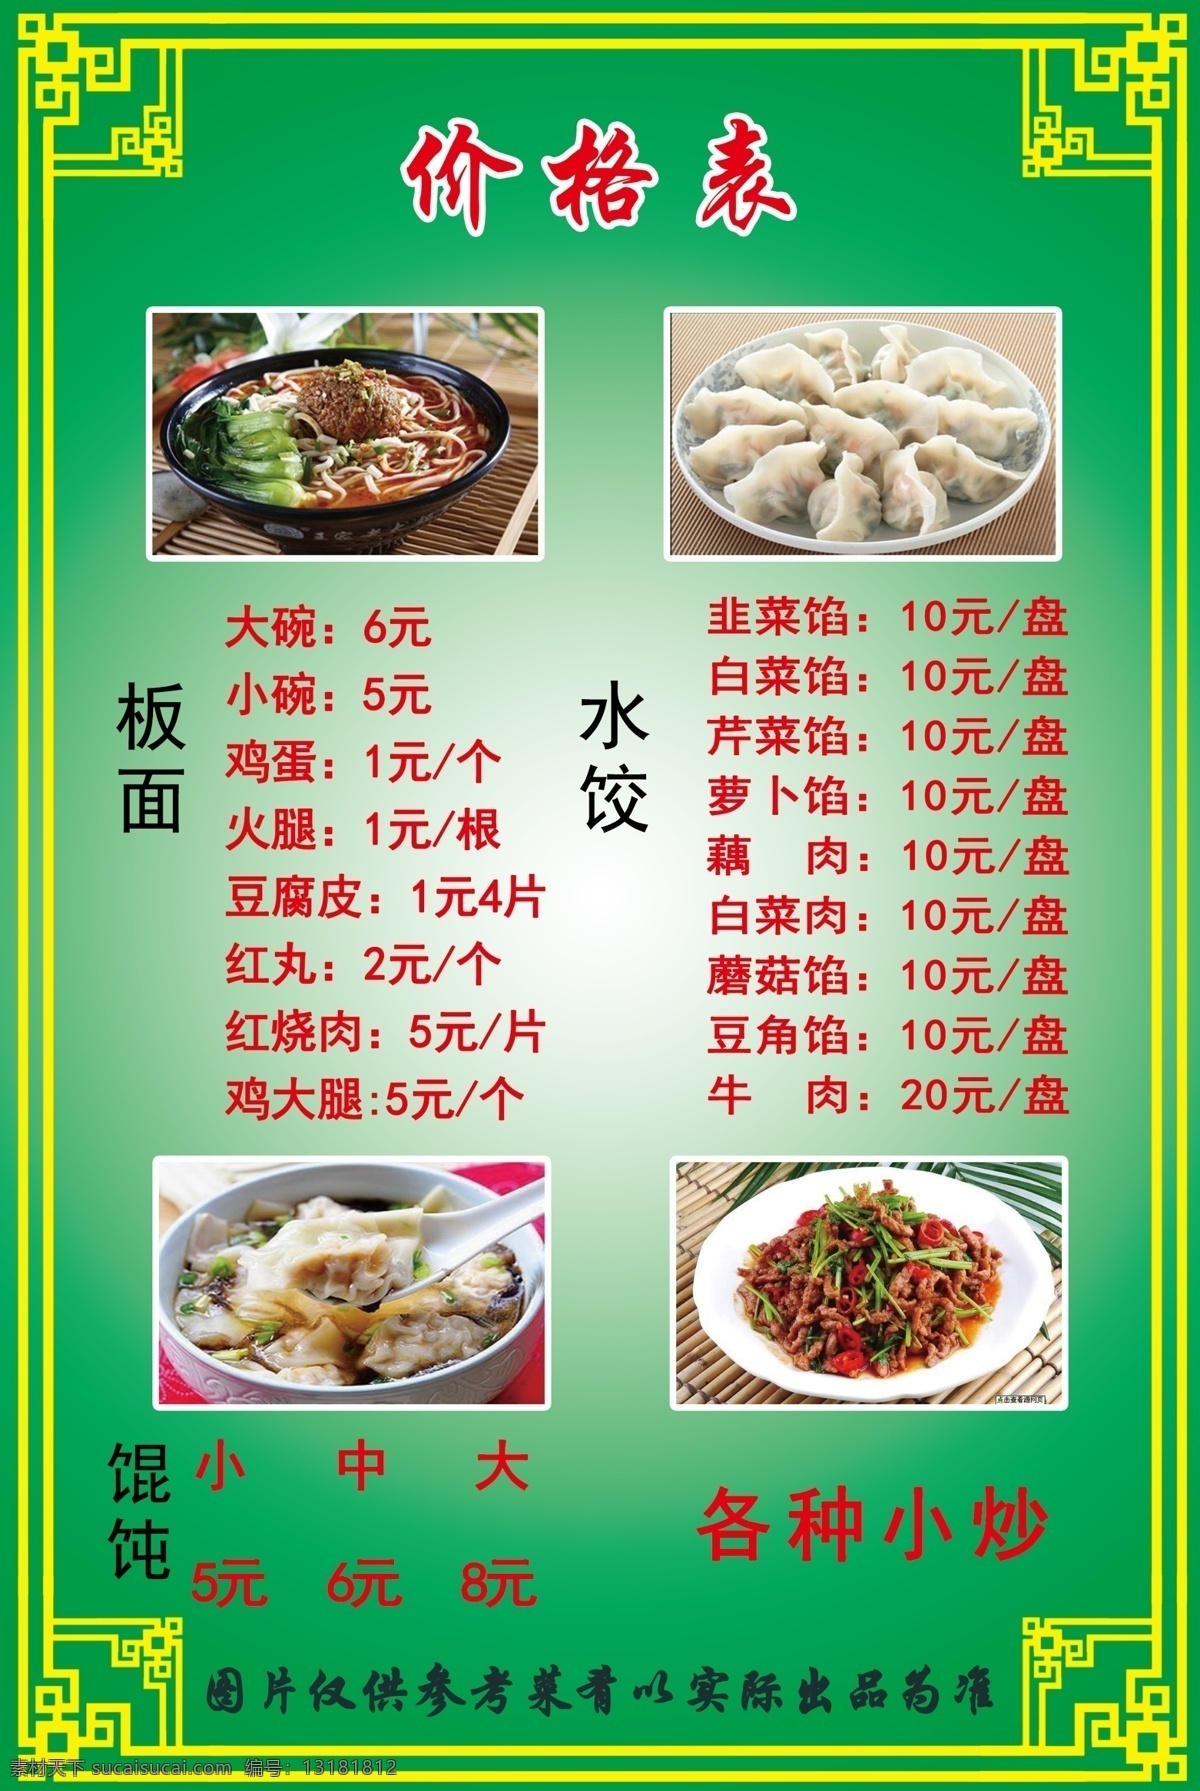 菜单 价格表 炒菜 板面 水饺 馄饨 各种小炒 绿色 文字 图案 饭店 食物 菜单菜谱